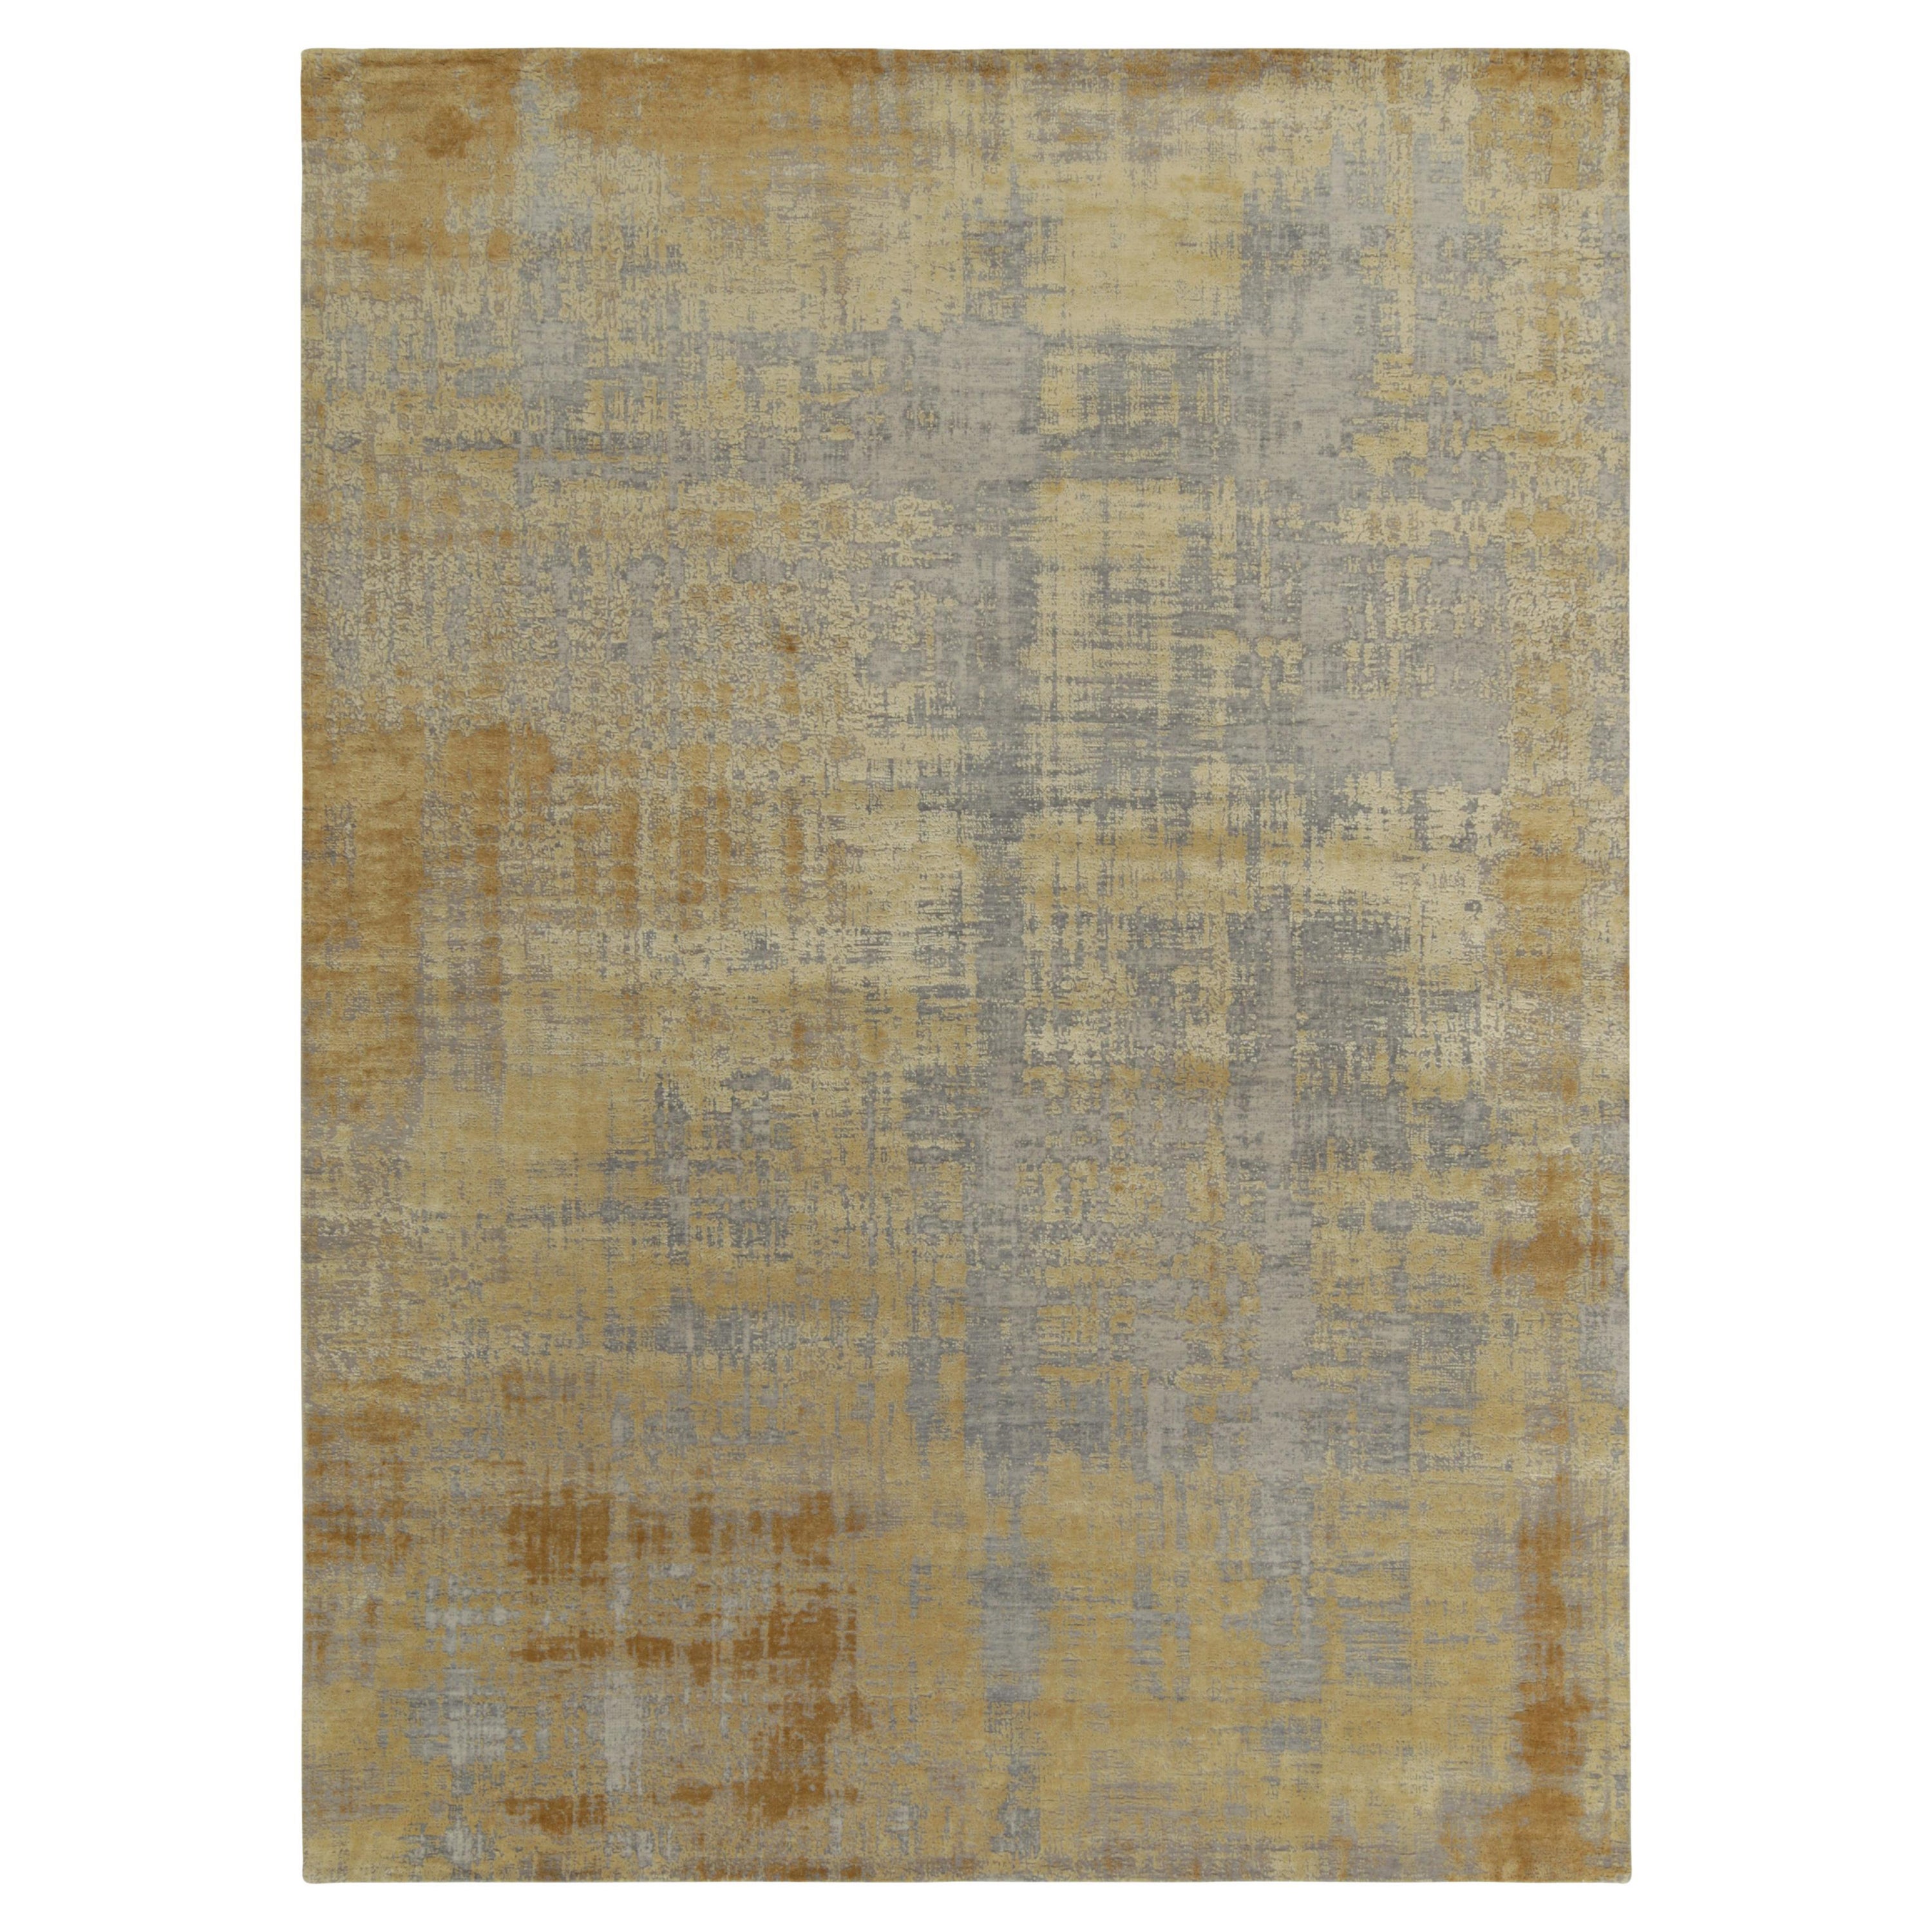 Rug & Kilim's Zusammenfassung  Teppich in Gold und Silber-Grau mit Streakmuster